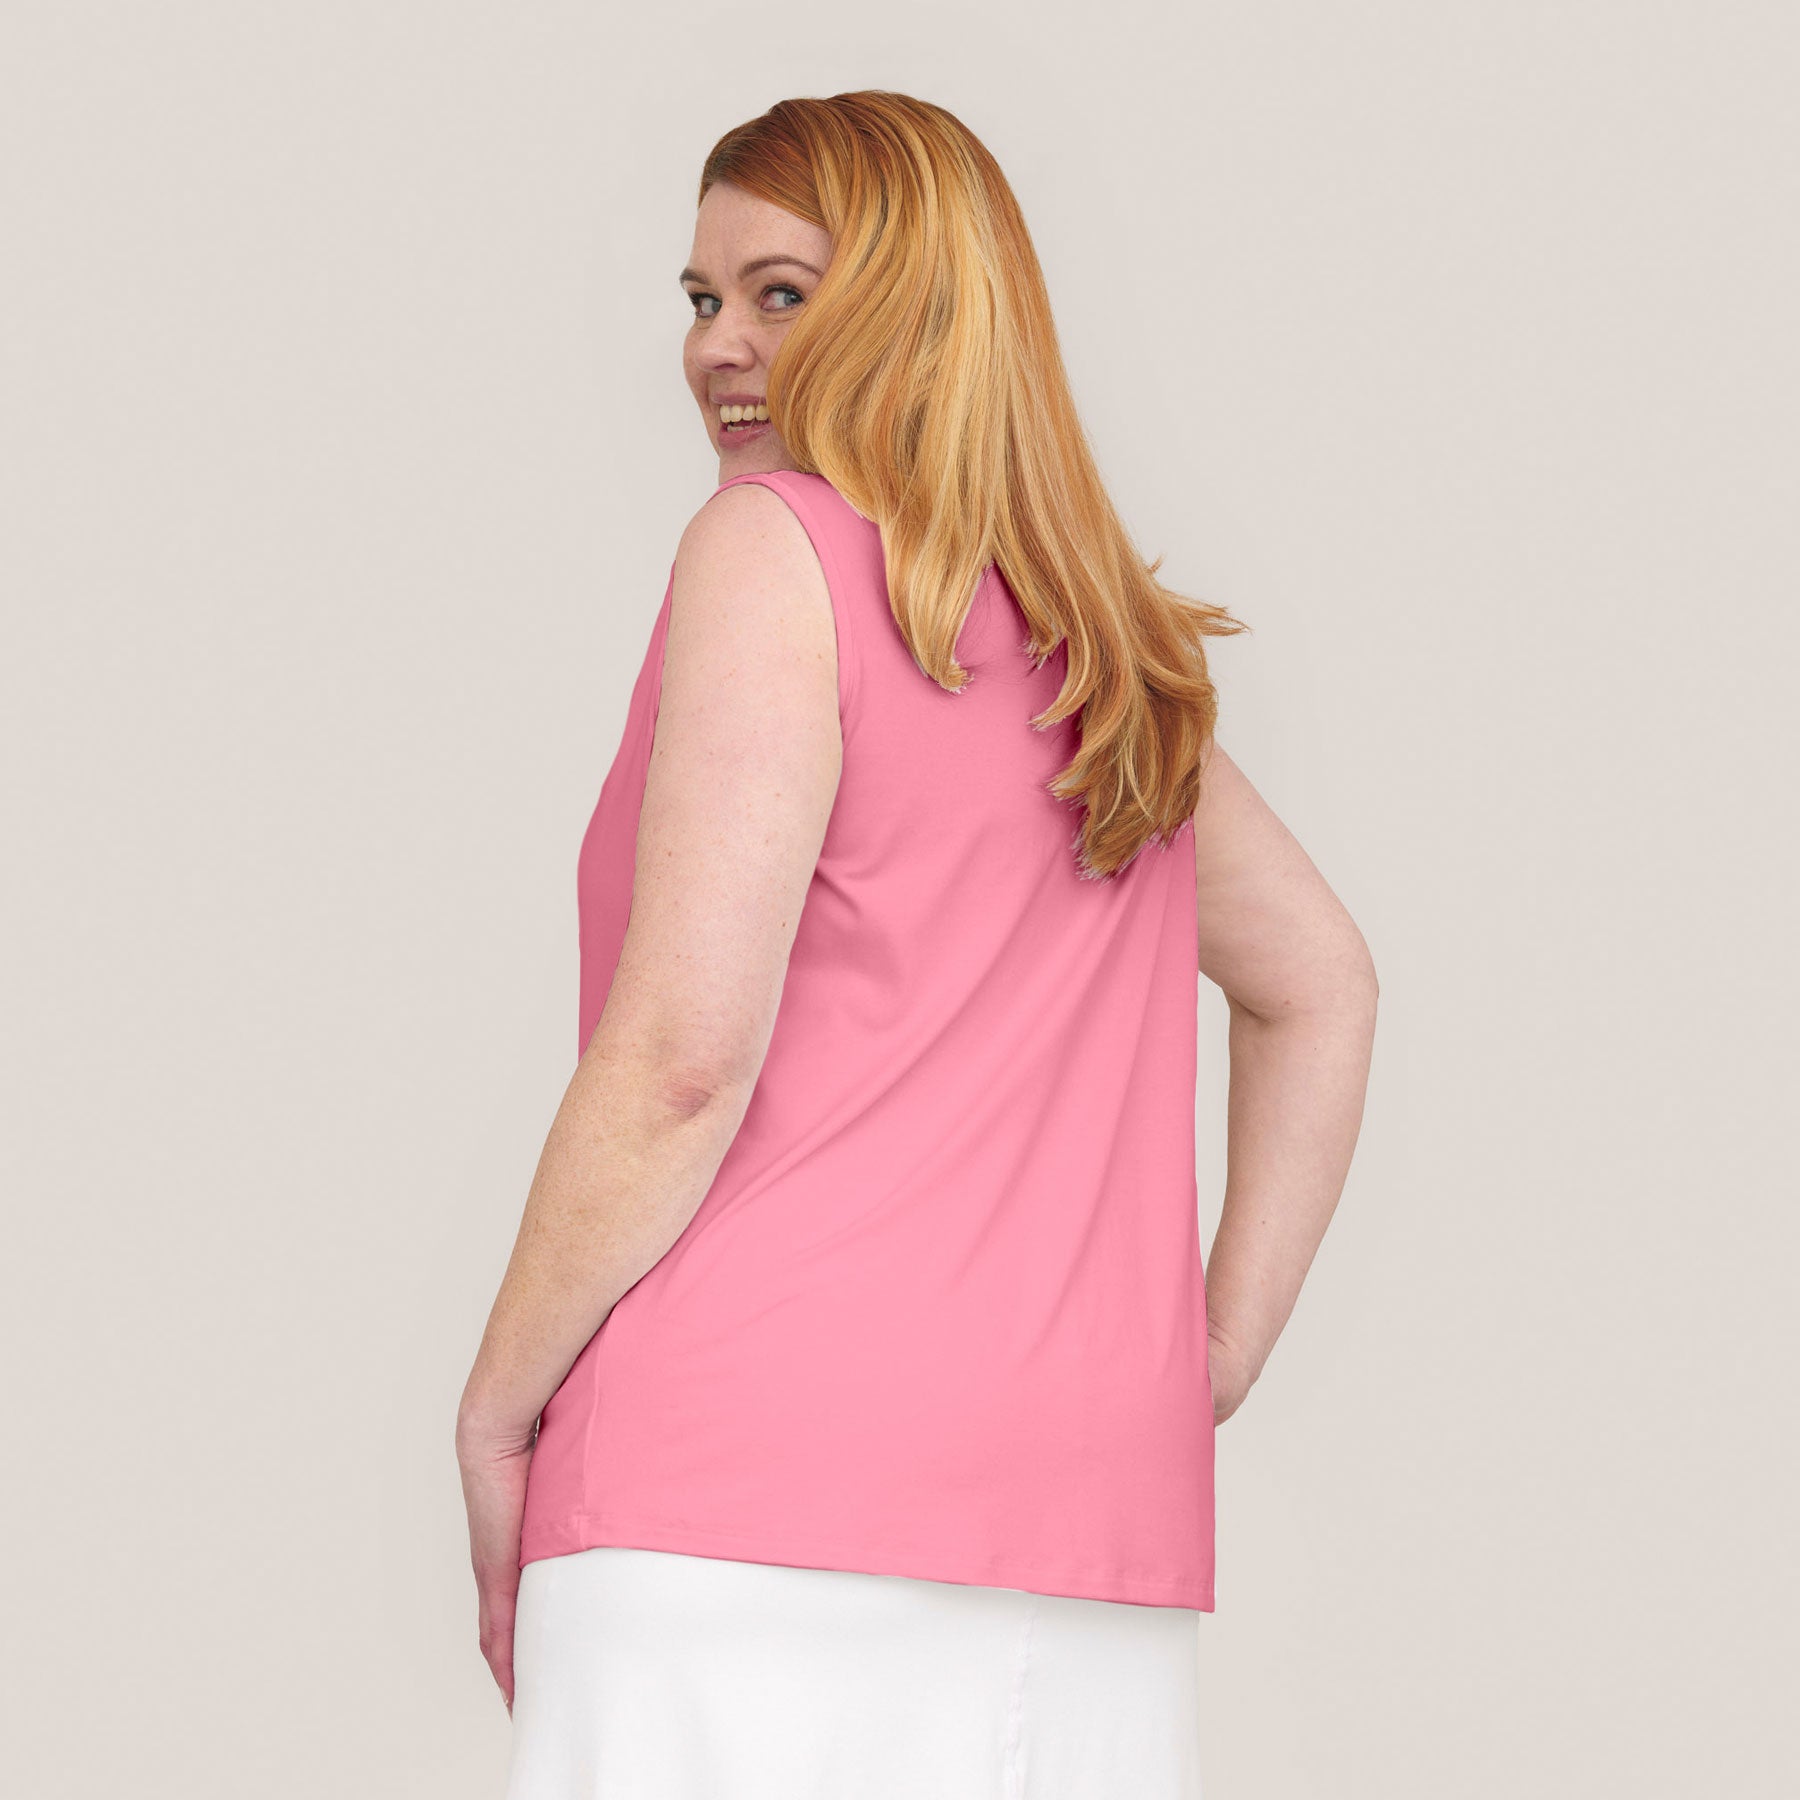 Vaaleanpunainen Naisten toppi takaapäin kuvattuna.